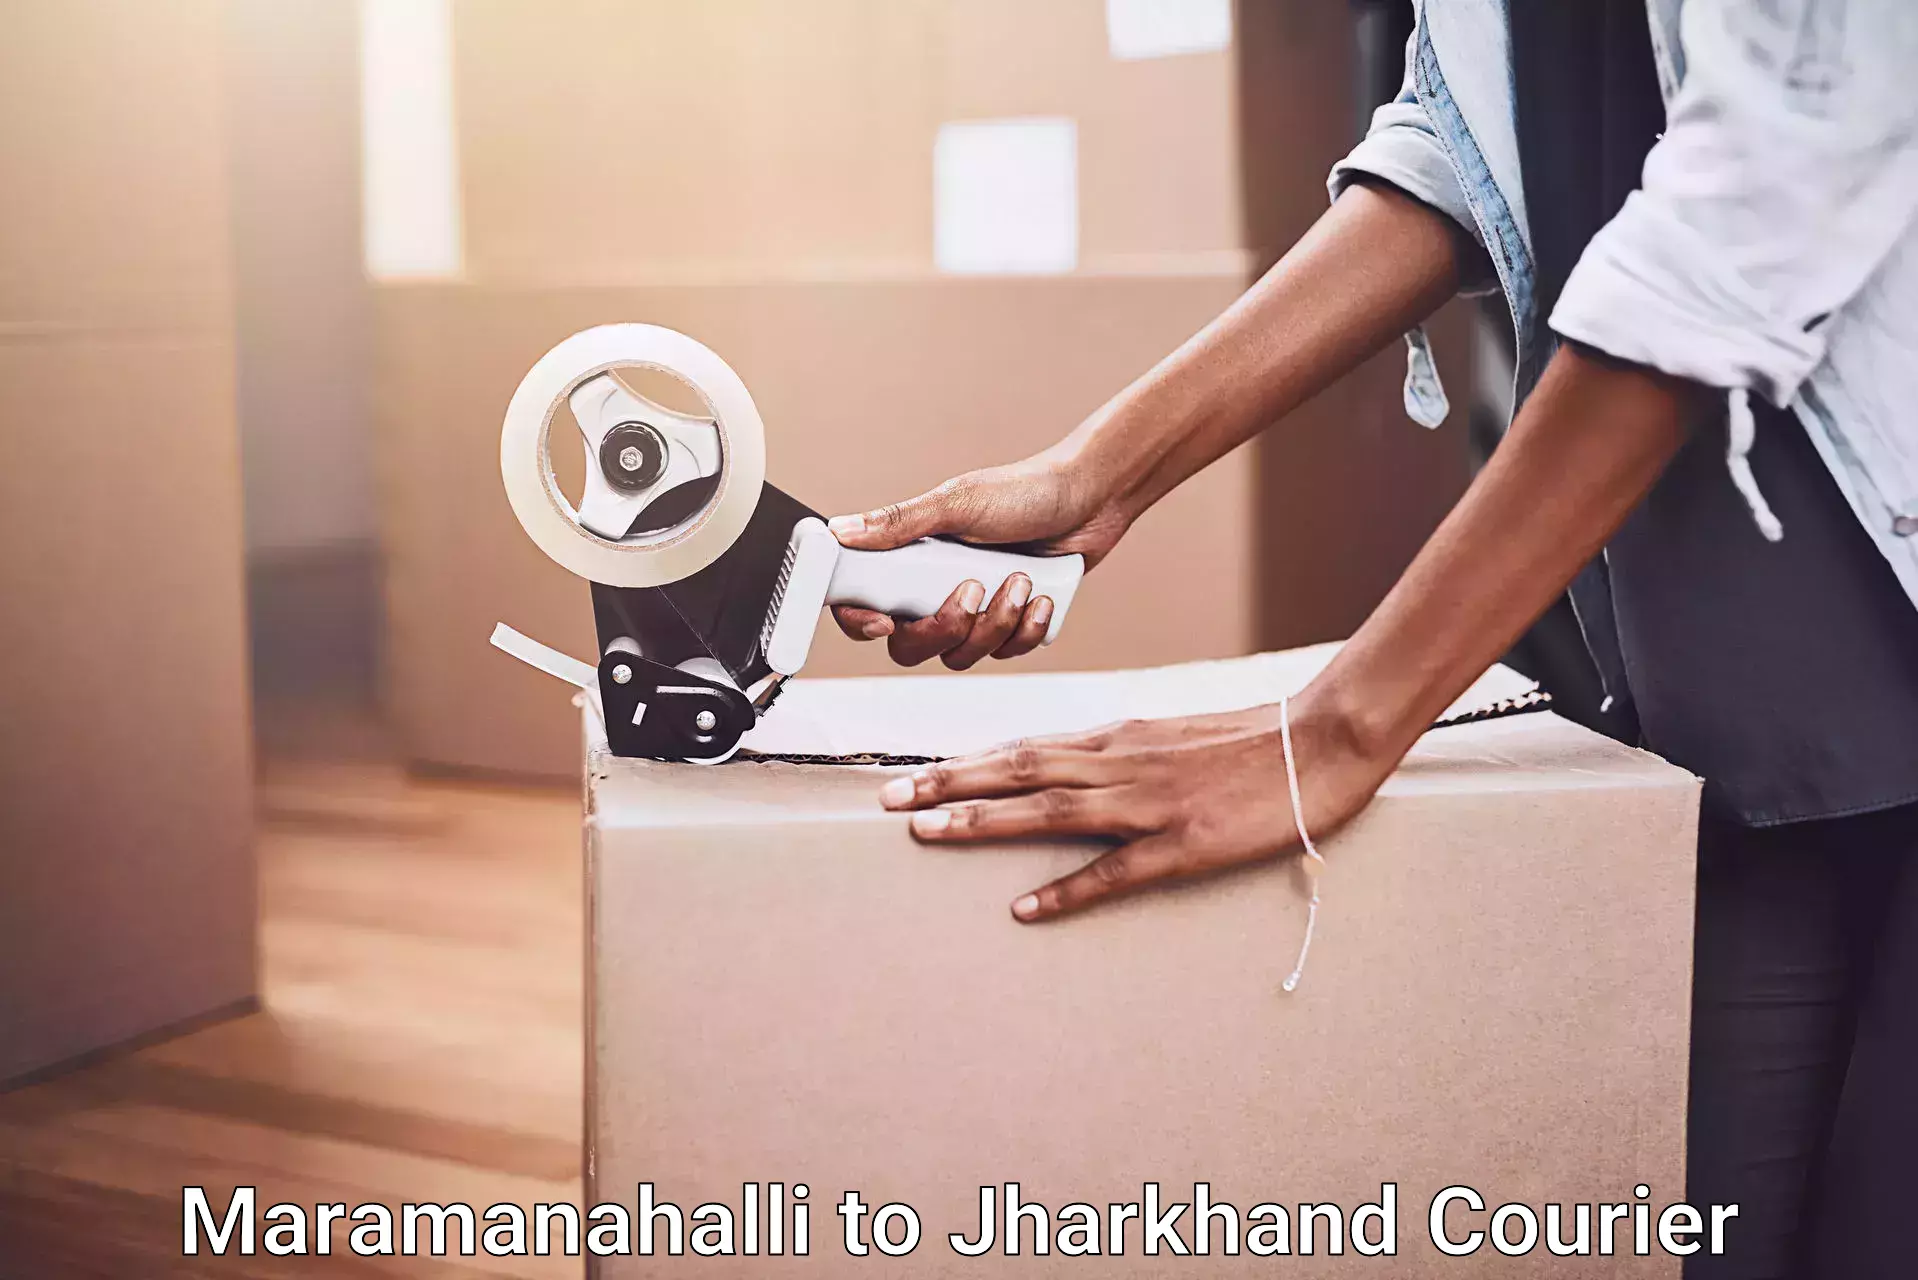 Professional moving assistance Maramanahalli to Palamu